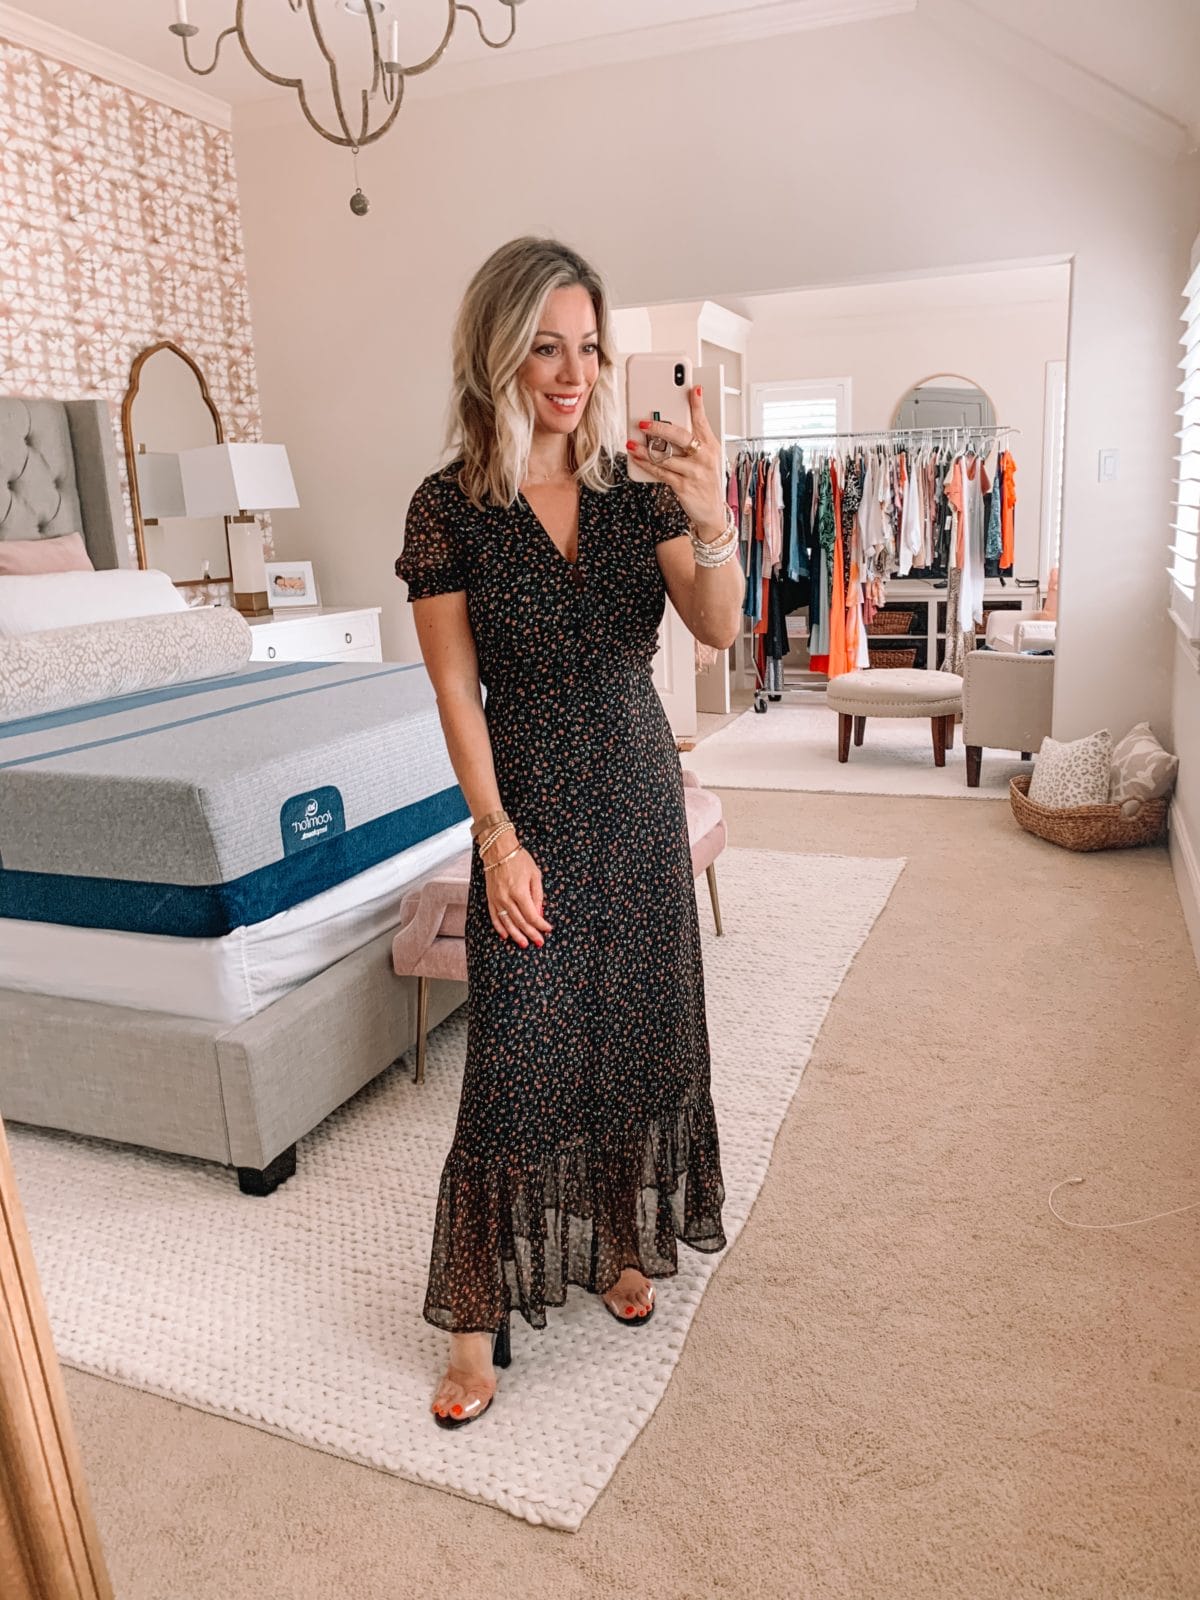 Dressing Room Finds Nordstrom and Target, Short Sleeve Black Floral Dress, Clear Heels 